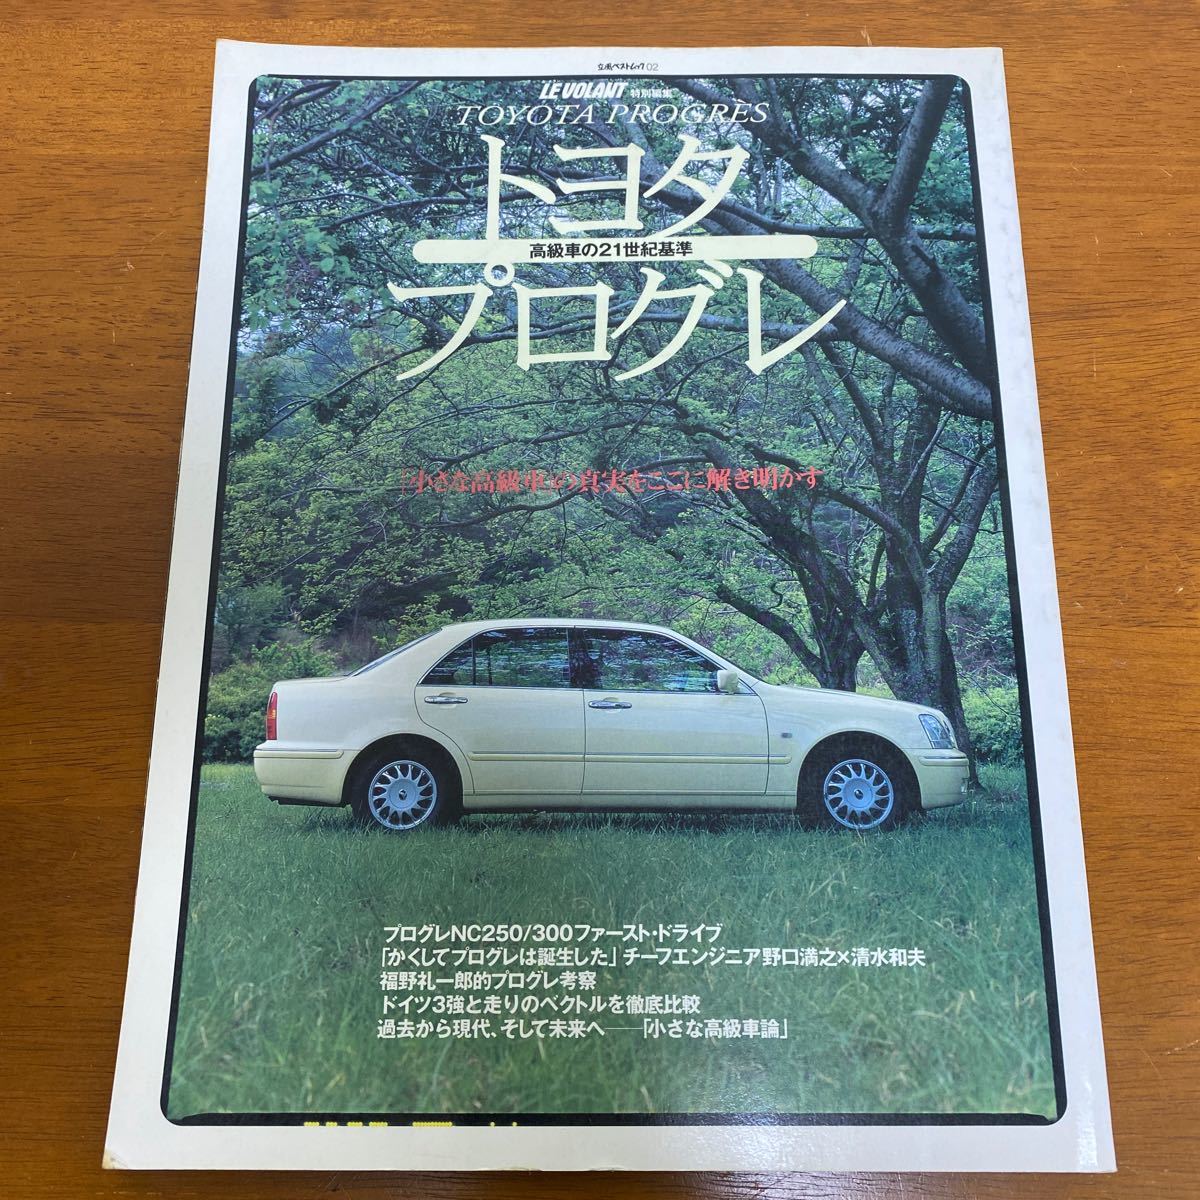 トヨタプログレ 高級車の21世紀基準(立風ベストムック ルボラン LE VOLANT 特別編集) 1998年7月14日発行 ※すべてシリーズに似た本です_画像1